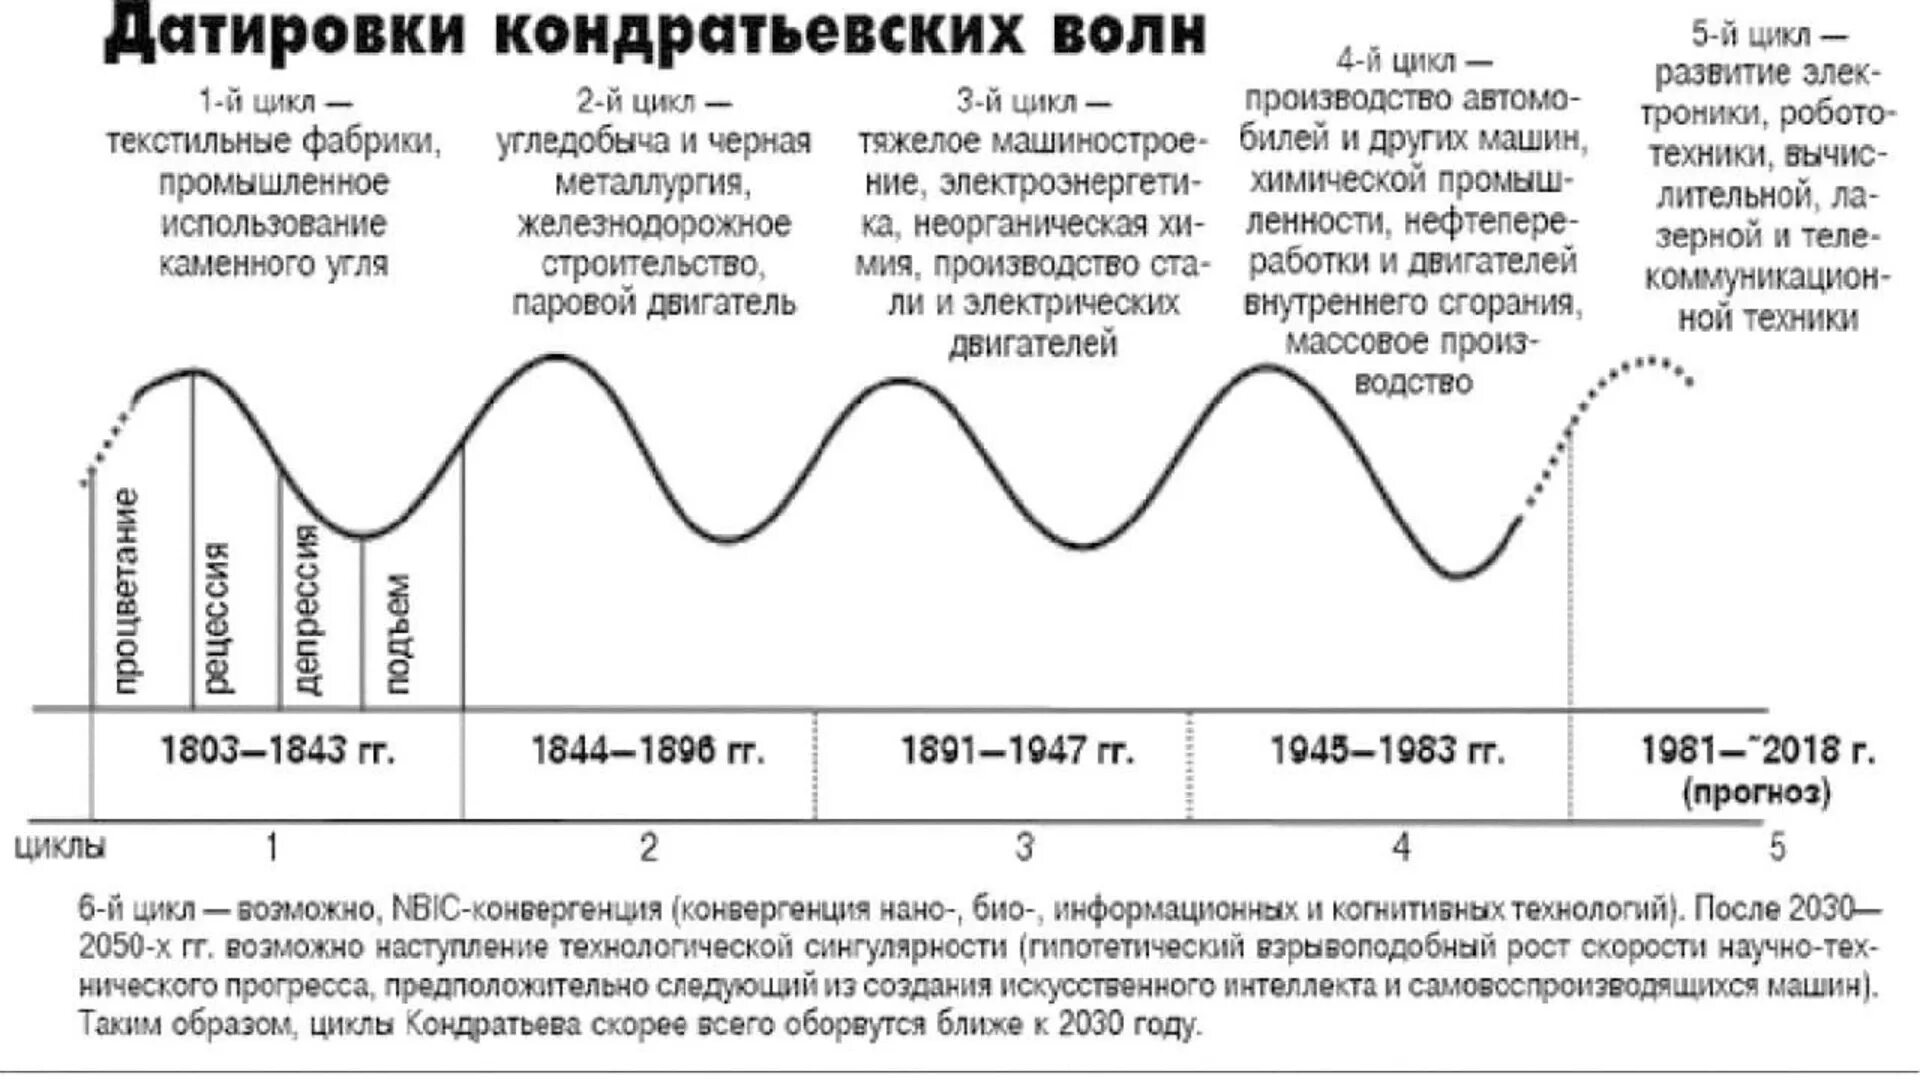 Период роста связанный. Теория «длинных волн» в экономике н.д. Кондратьева. Циклы н д Кондратьева. Теория длинных циклов н.д. Кондратьева. Датировки больших циклов Кондратьева.